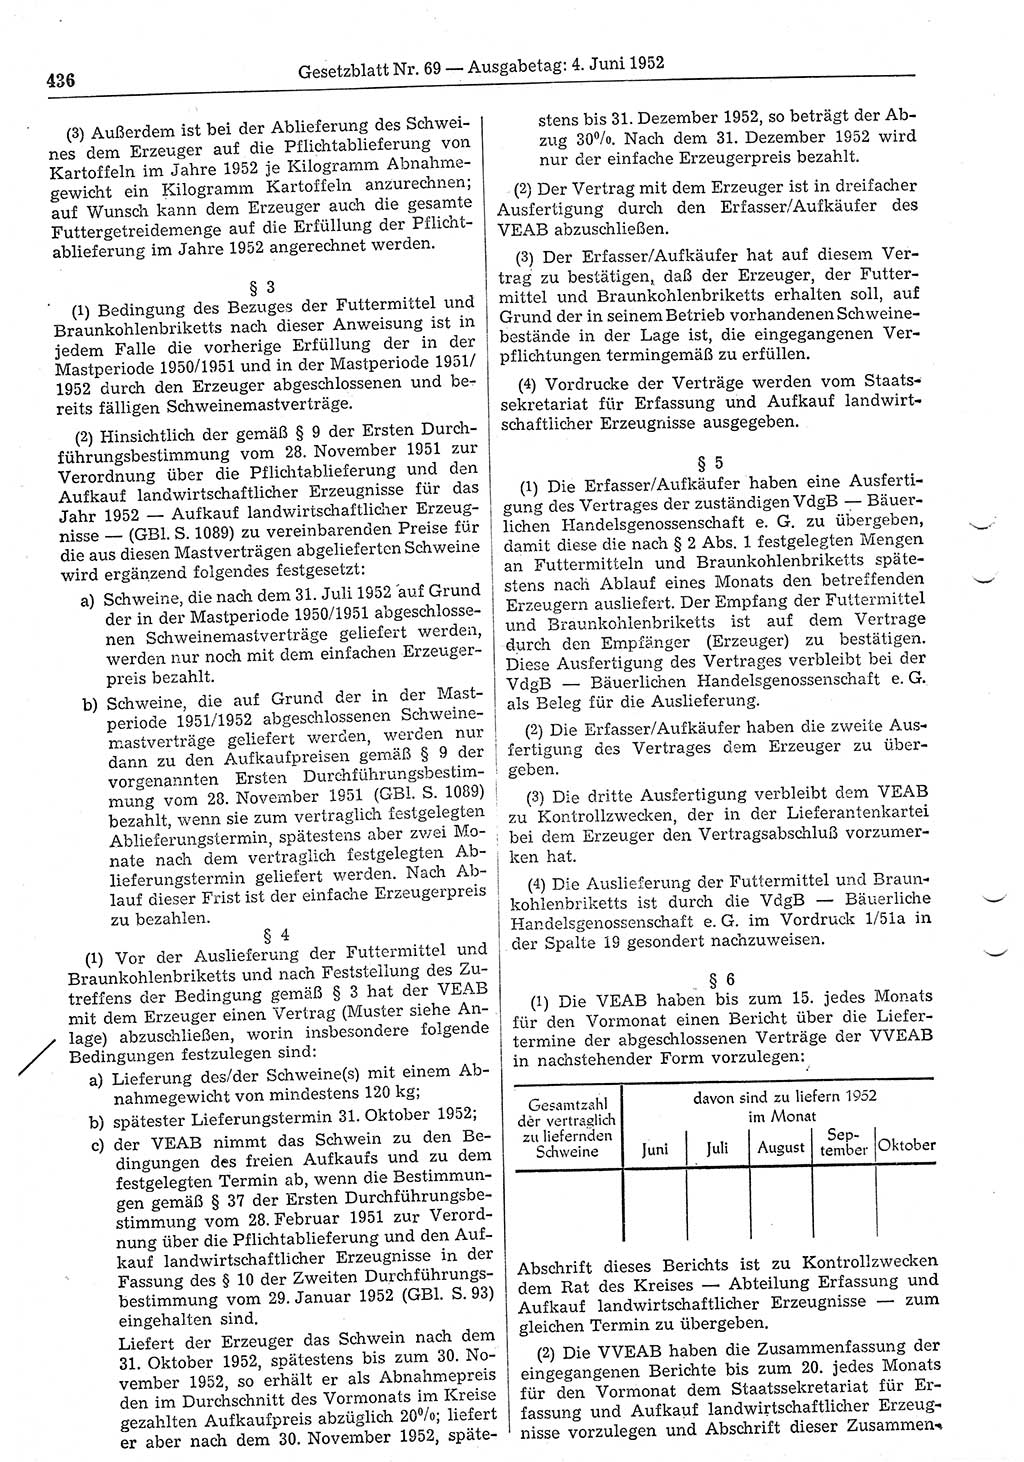 Gesetzblatt (GBl.) der Deutschen Demokratischen Republik (DDR) 1952, Seite 436 (GBl. DDR 1952, S. 436)